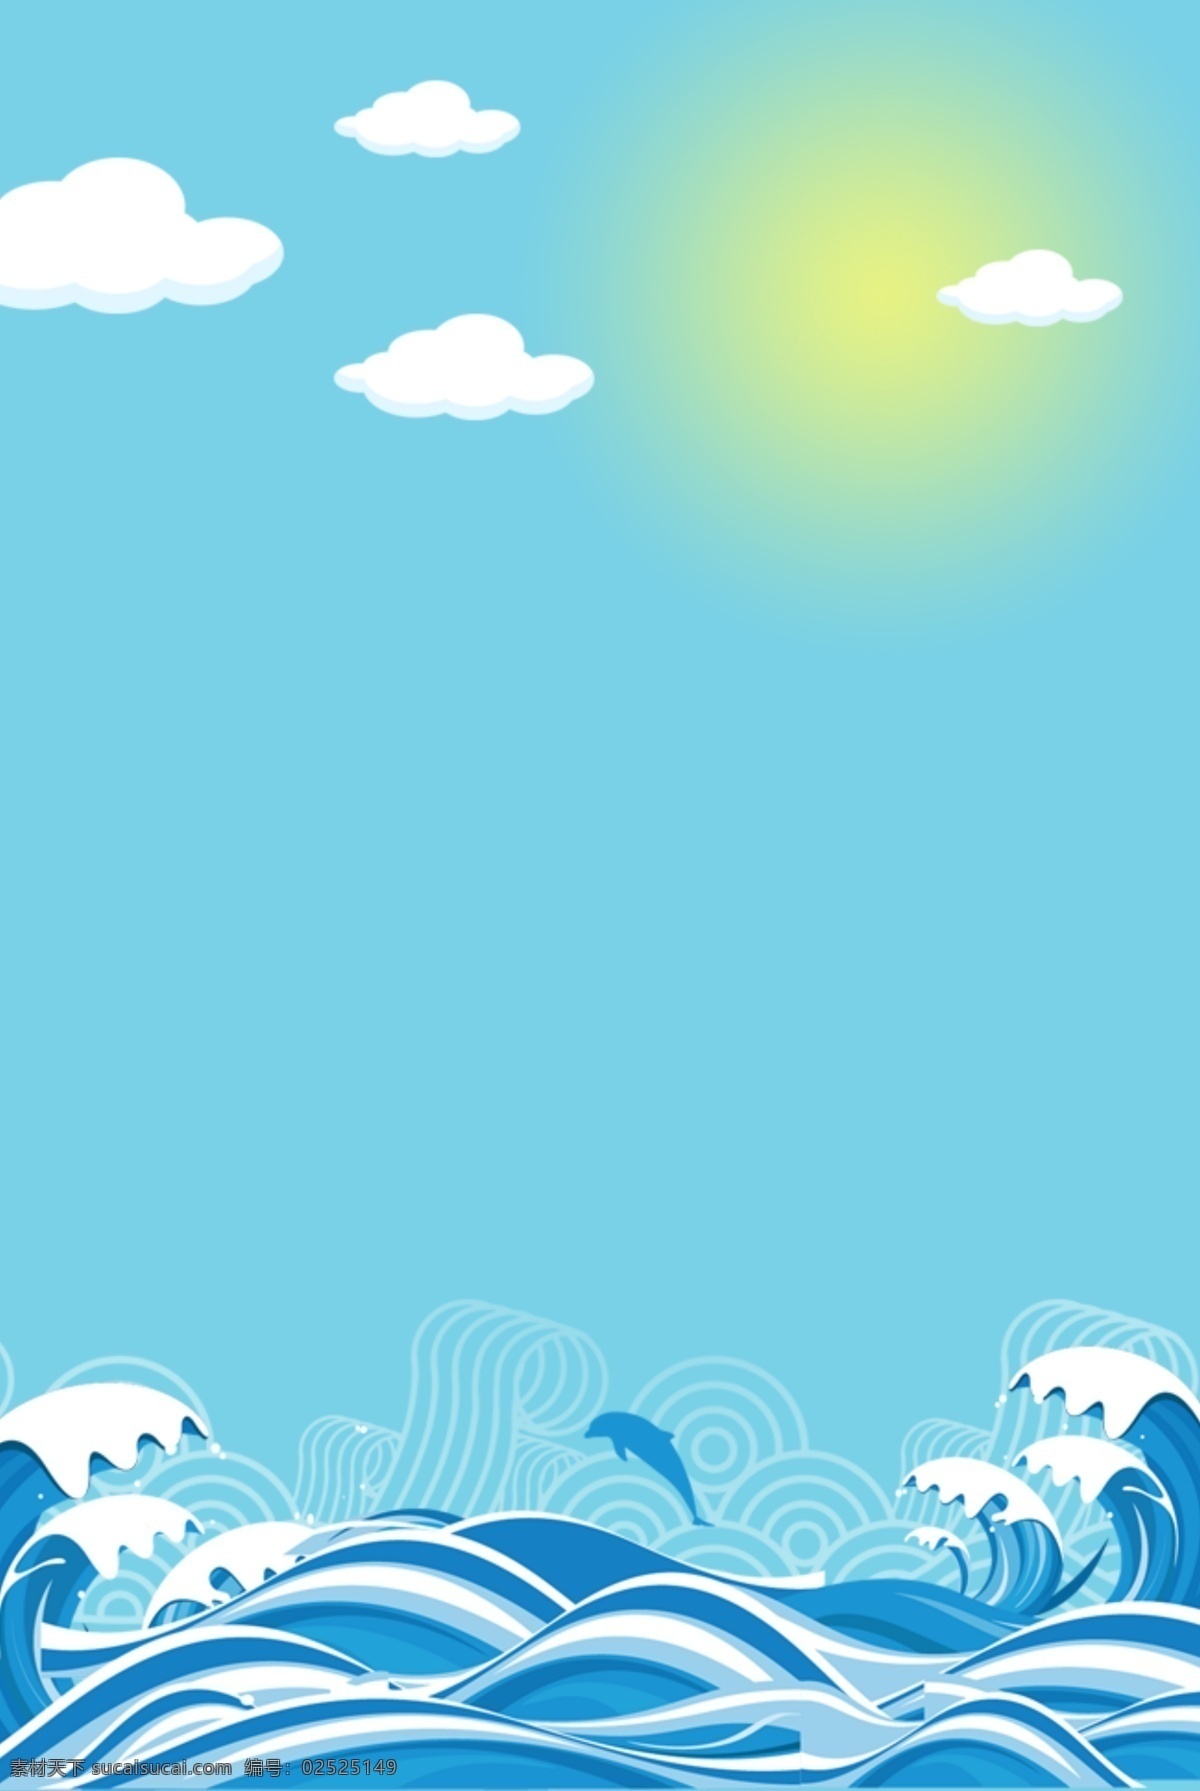 矢量 蓝色 插画 大海 背景 海洋 浪花 波浪 波涛 古典纹理 海水纹 卡通 复古 传统 海浪 海报